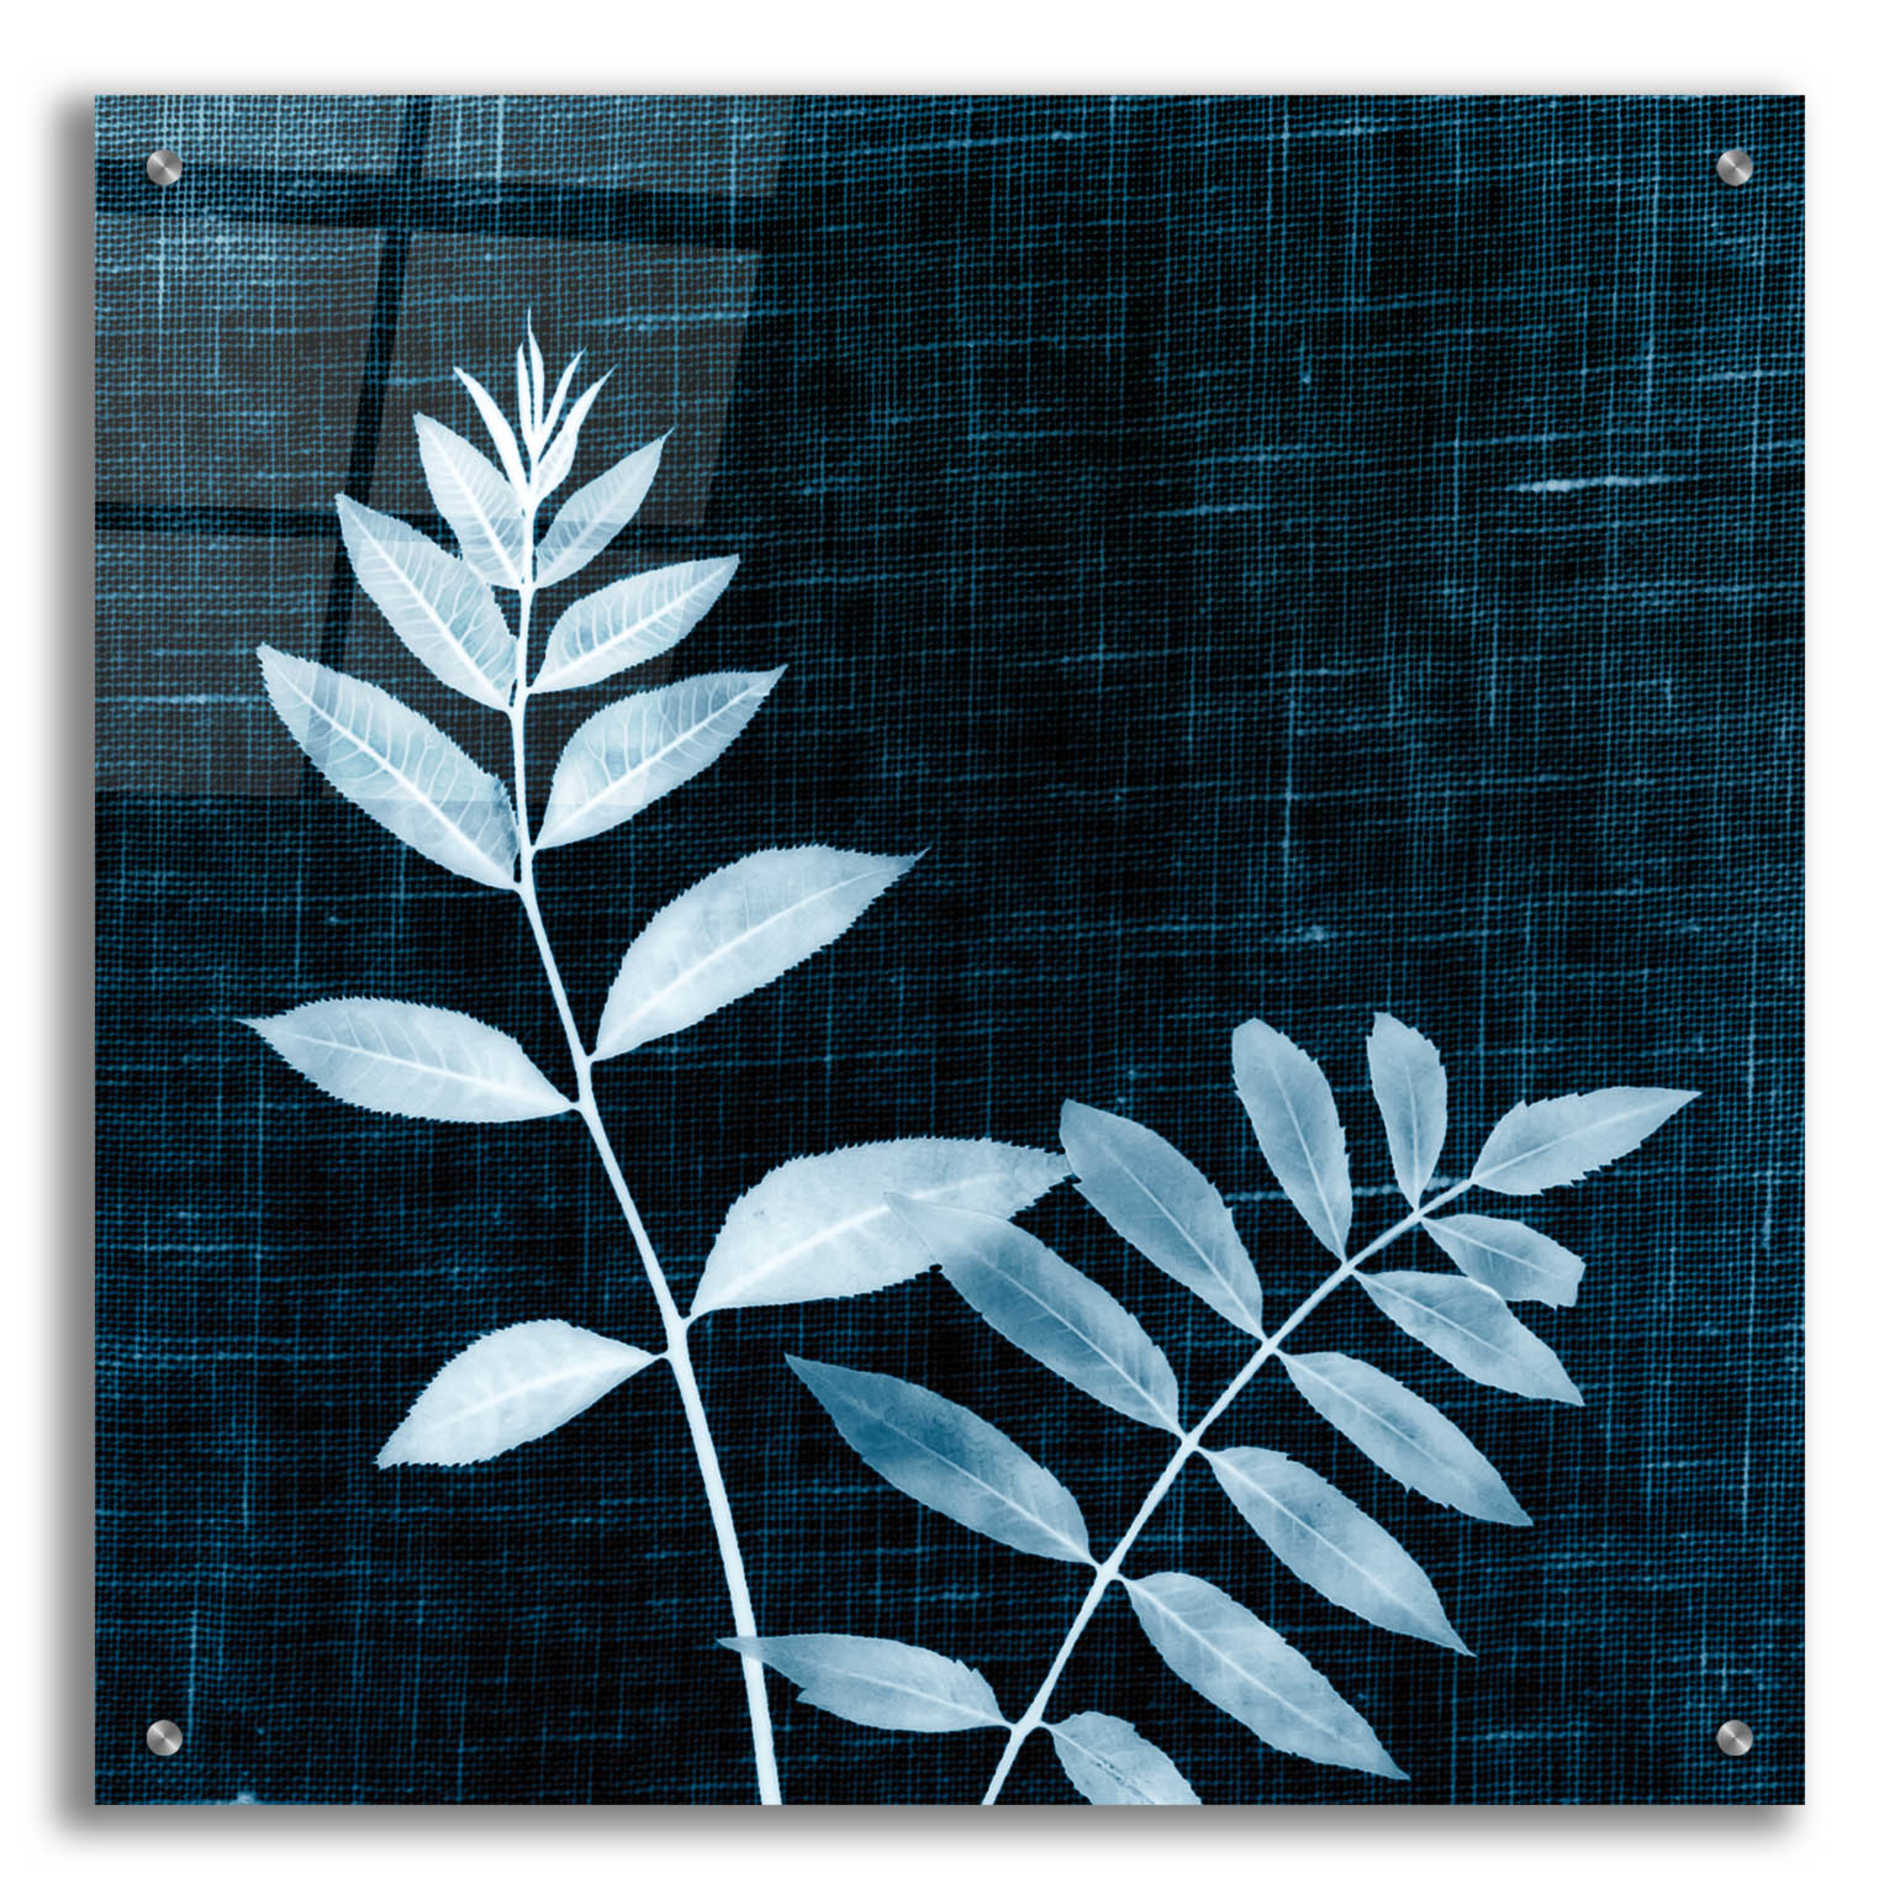 Epic Art 'Leaves on Linen II' by Debra Van Swearingen, Acrylic Glass Wall Art,24x24